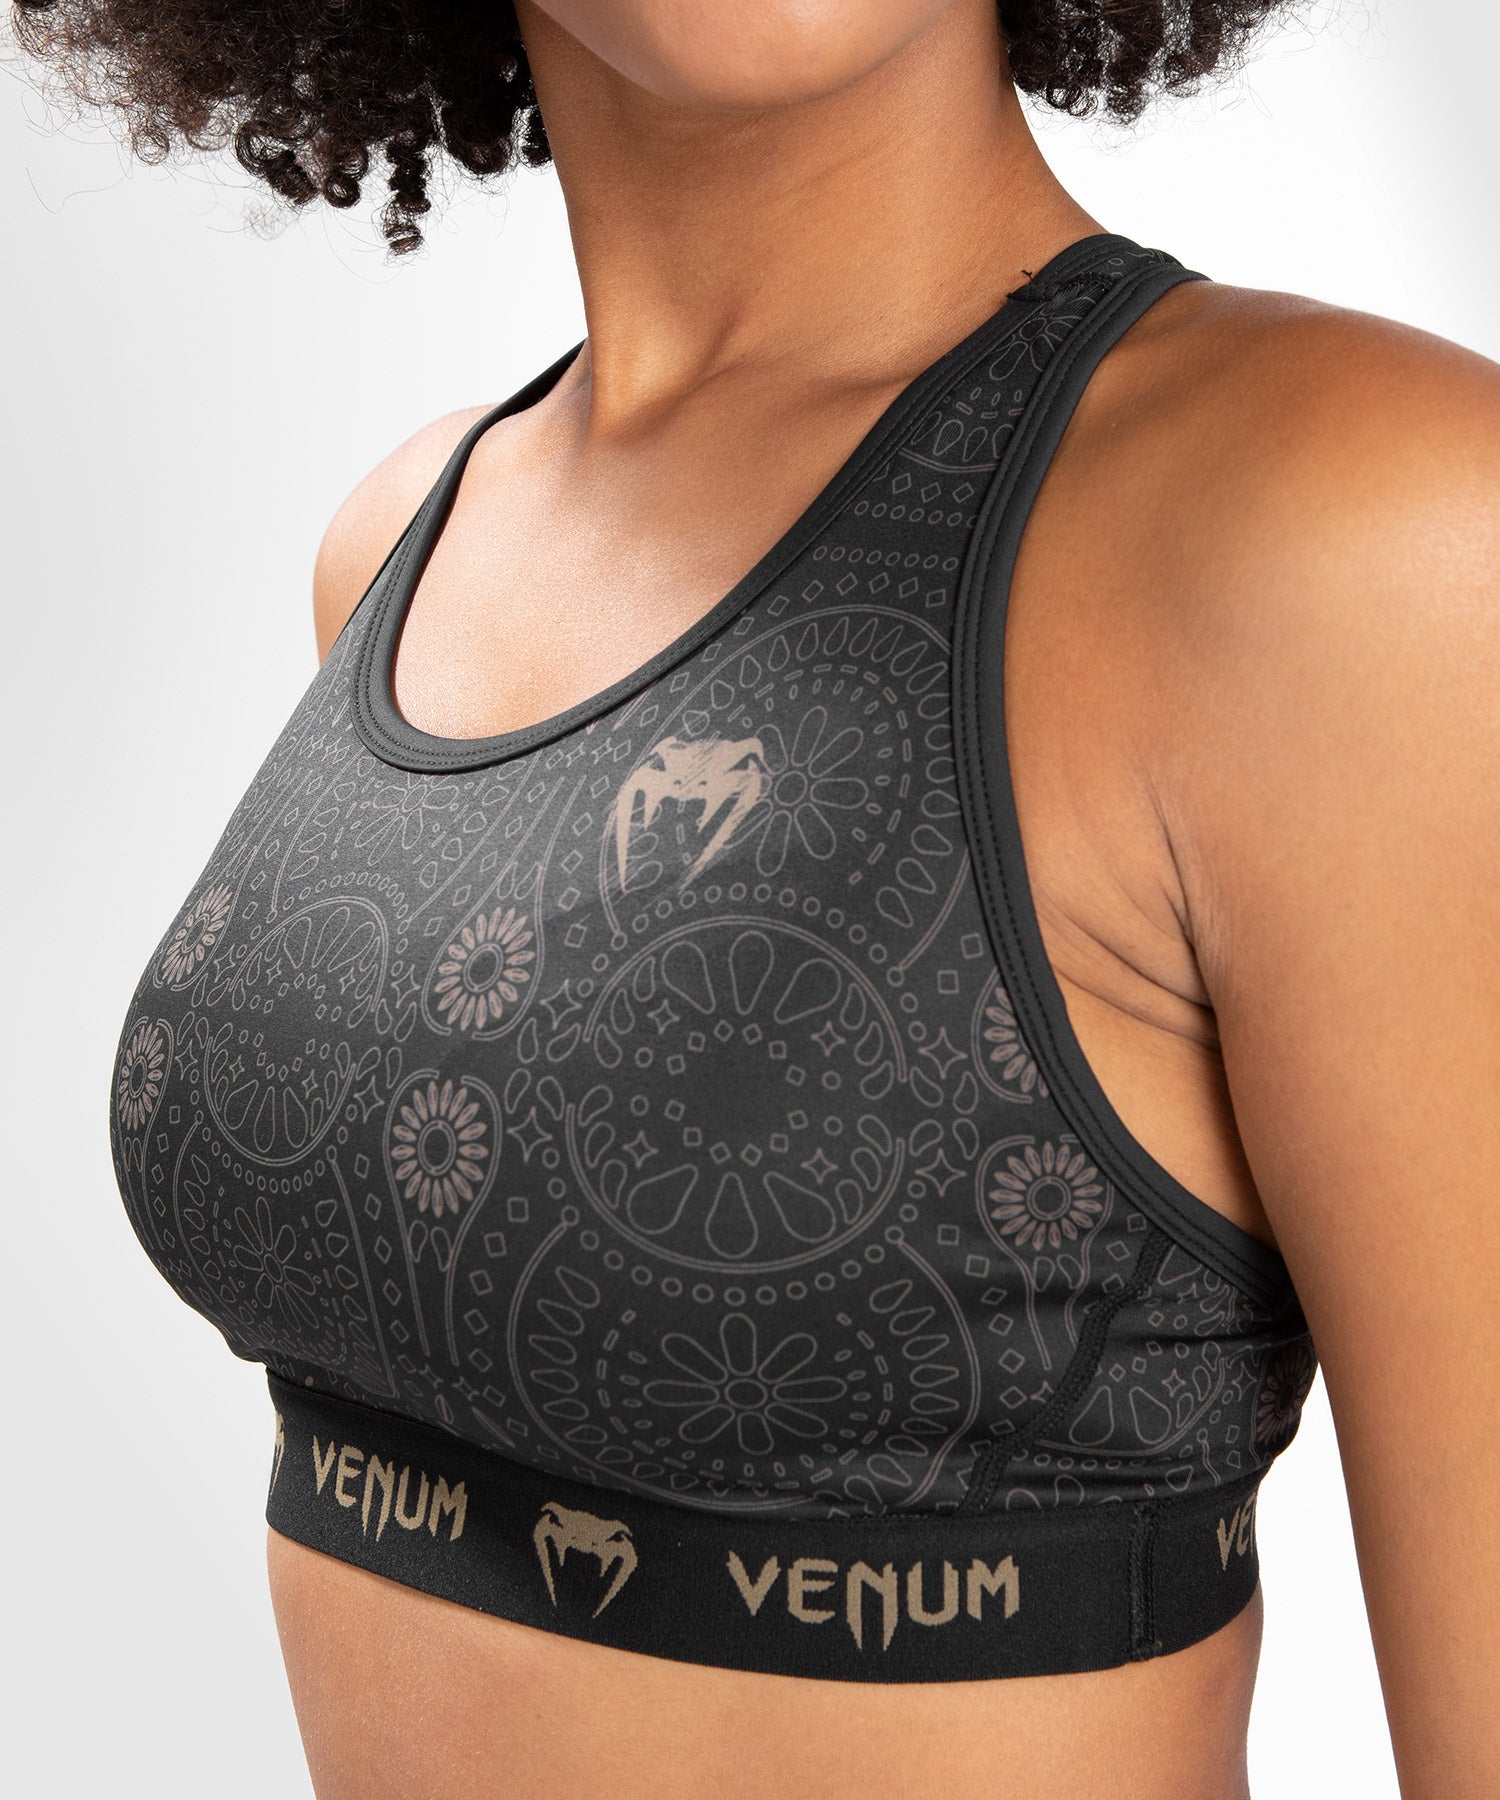 Venum Glow Sport Bra - For Women - Black - Venum